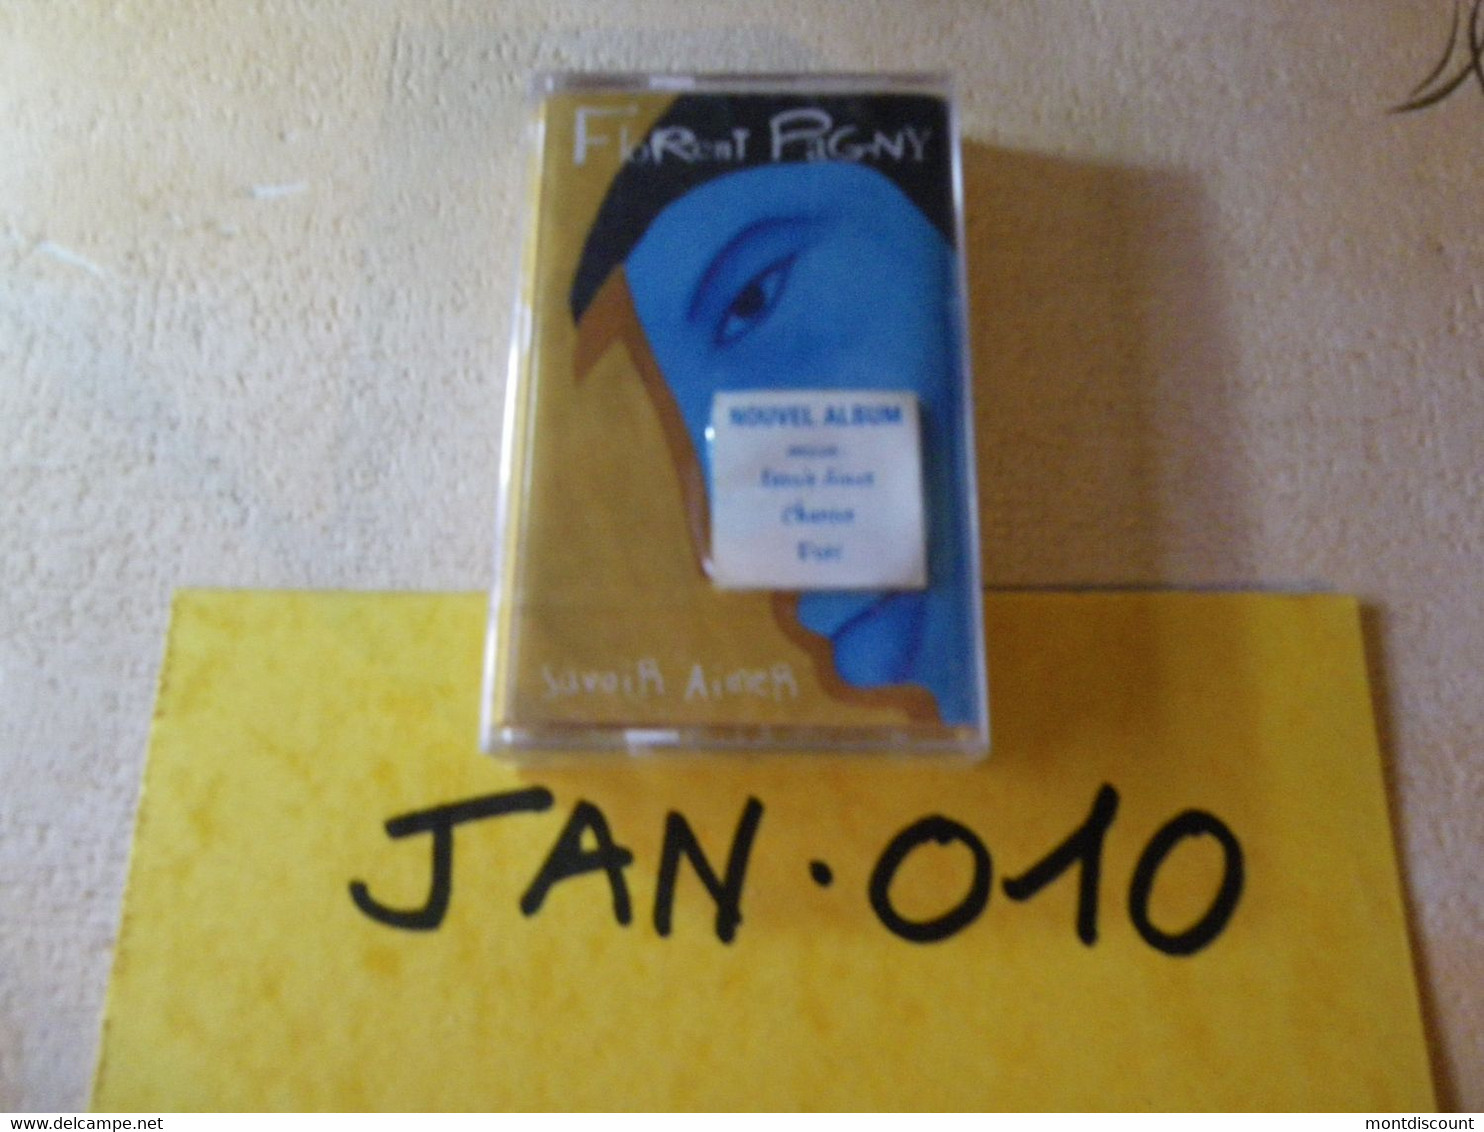 FLORENT PAGNY K7 AUDIO EMBALLE D'ORIGINE JAMAIS SERVIE... VOIR PHOTO... (JAN 010) - Cassettes Audio